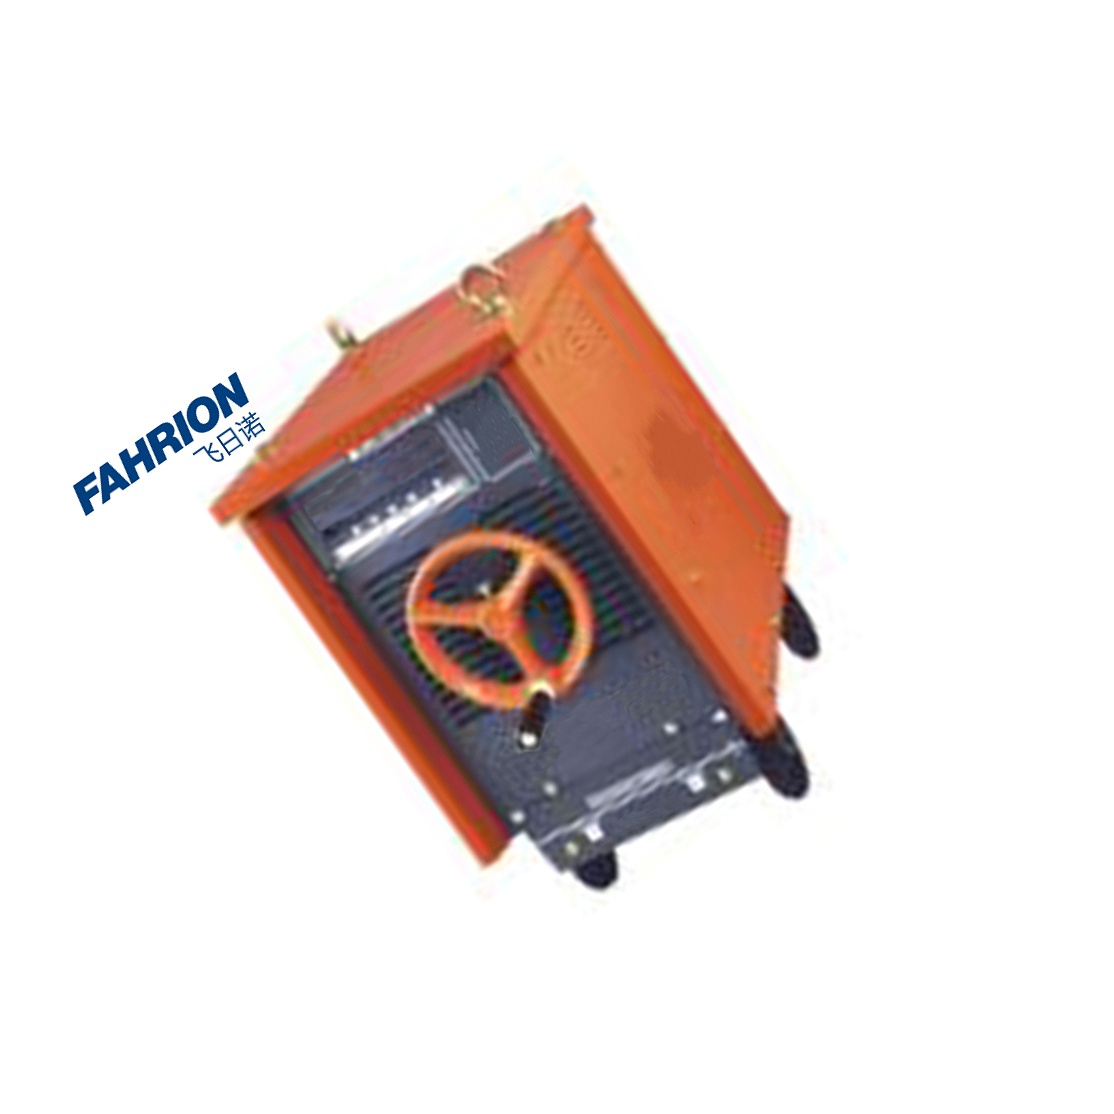 FAHRION 电焊机 GD99-900-2808